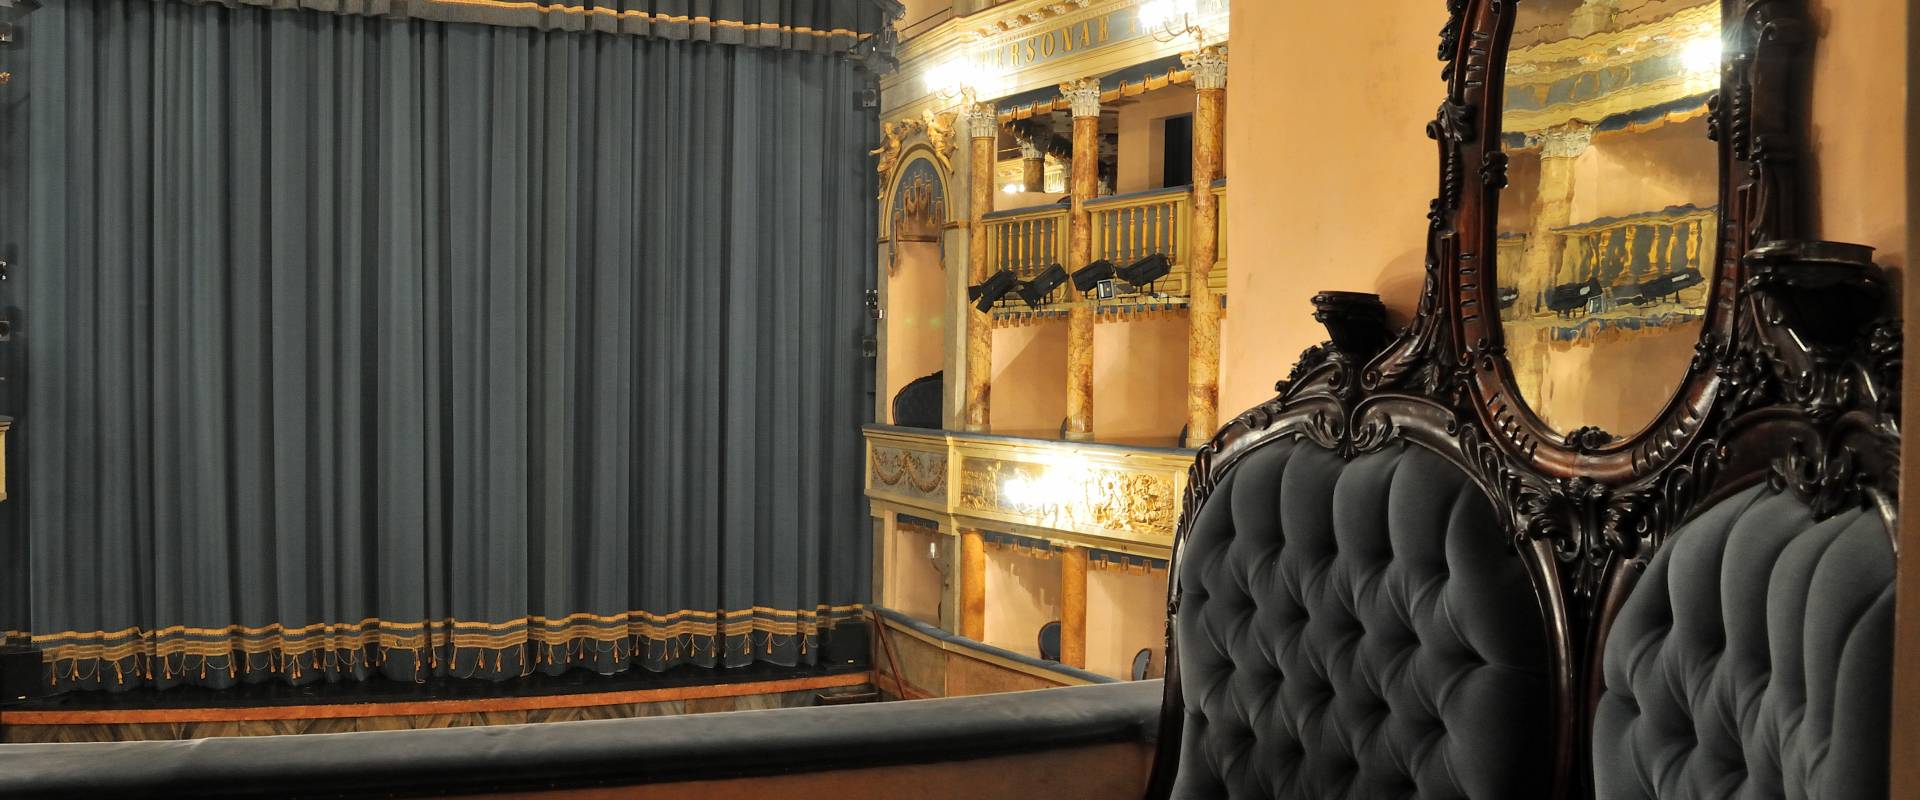 Teatro Comunale Angelo Masini - Comune di Faenza 03 foto di Lorenzo Gaudenzi